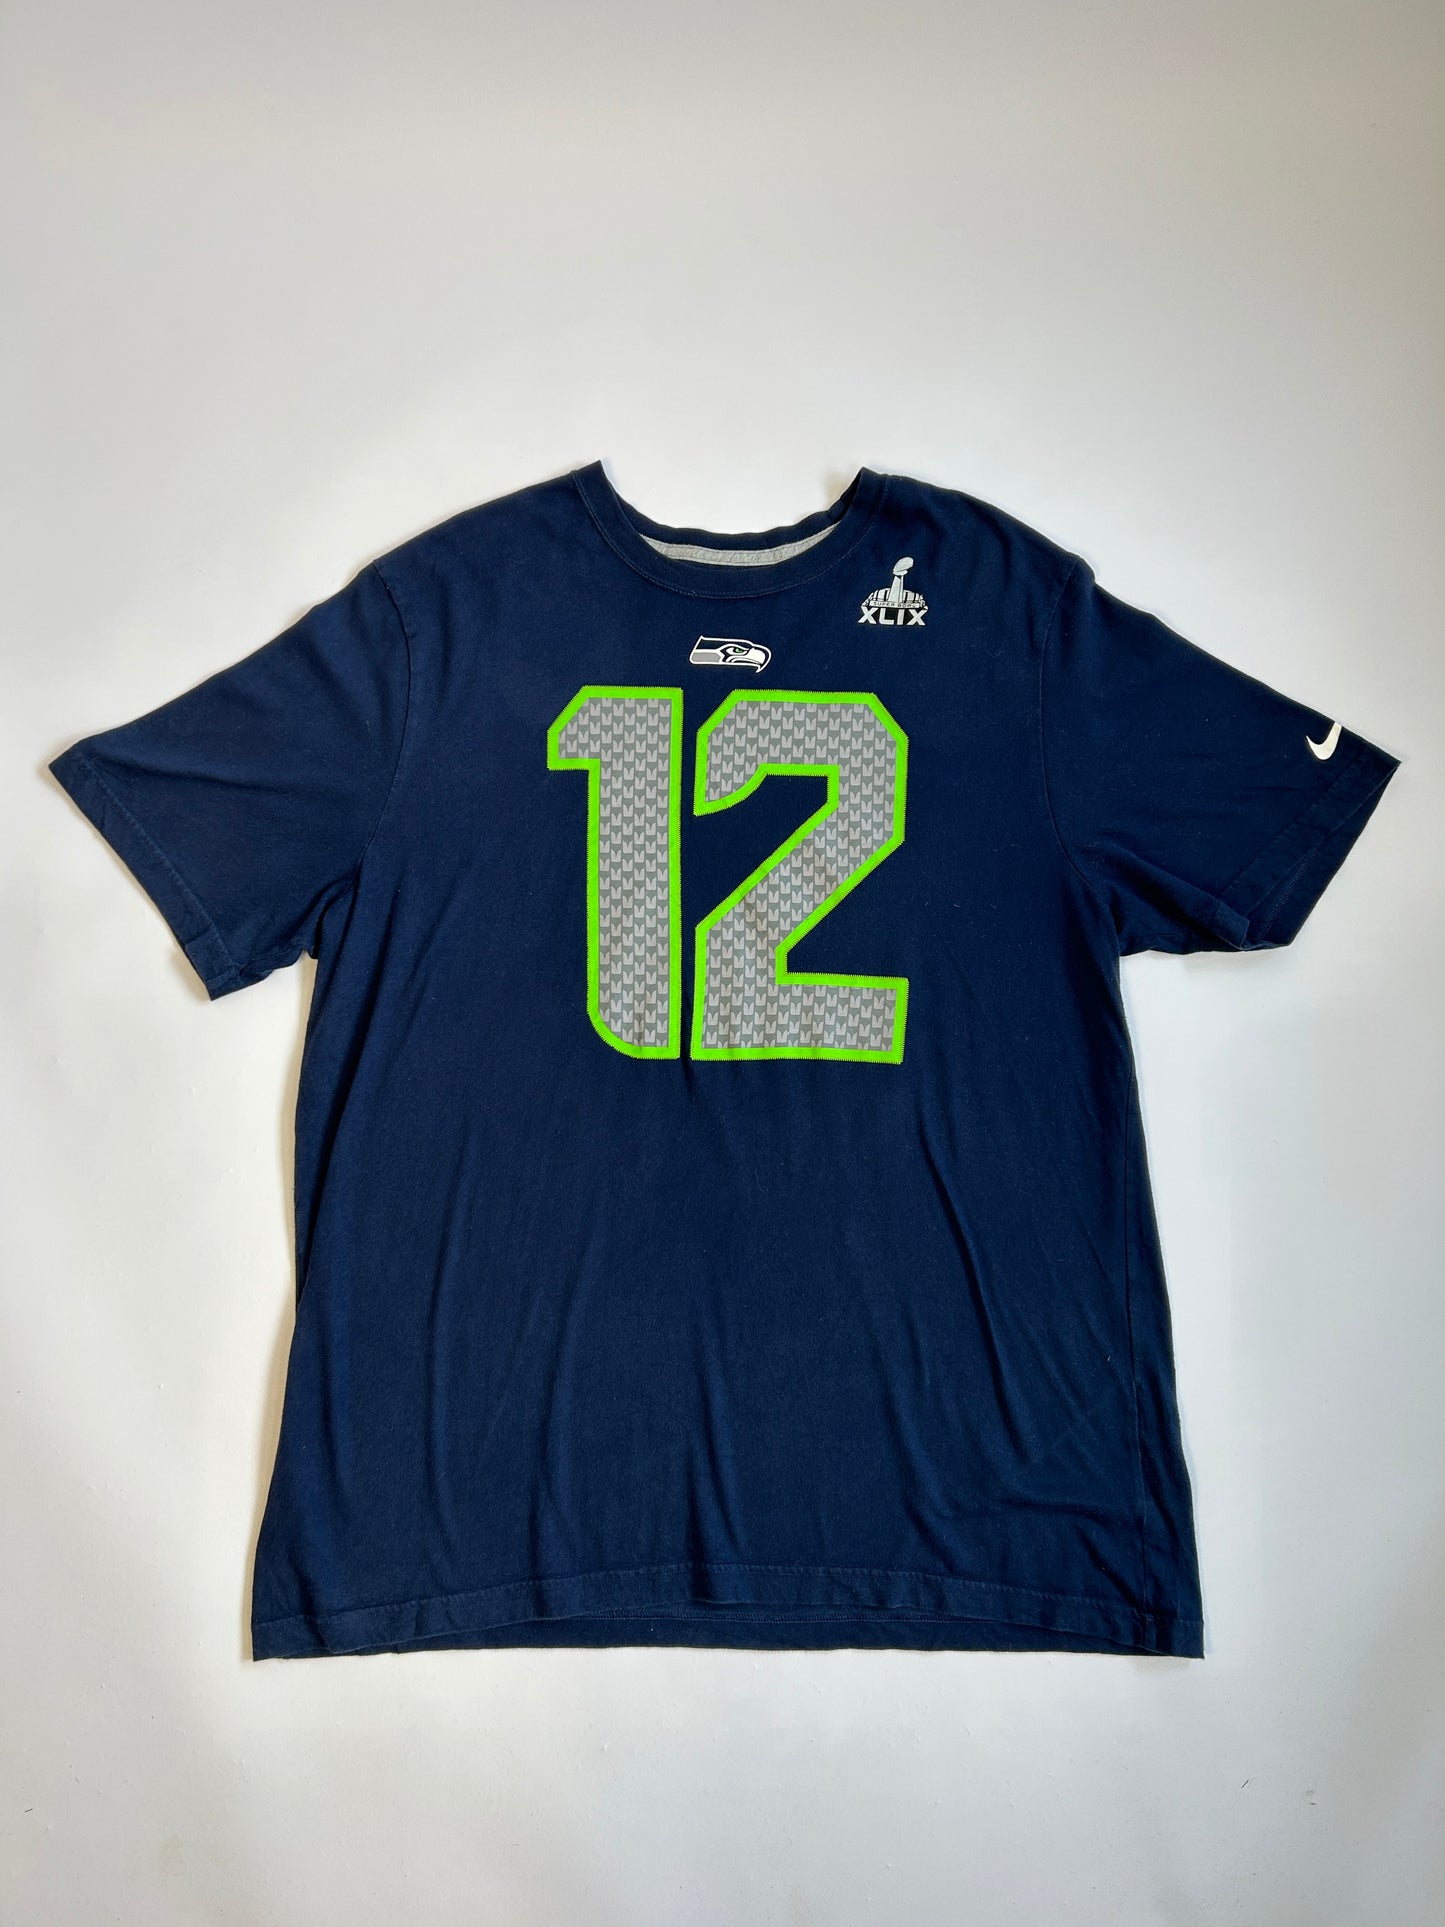 Seahawks T-shirt - XXL